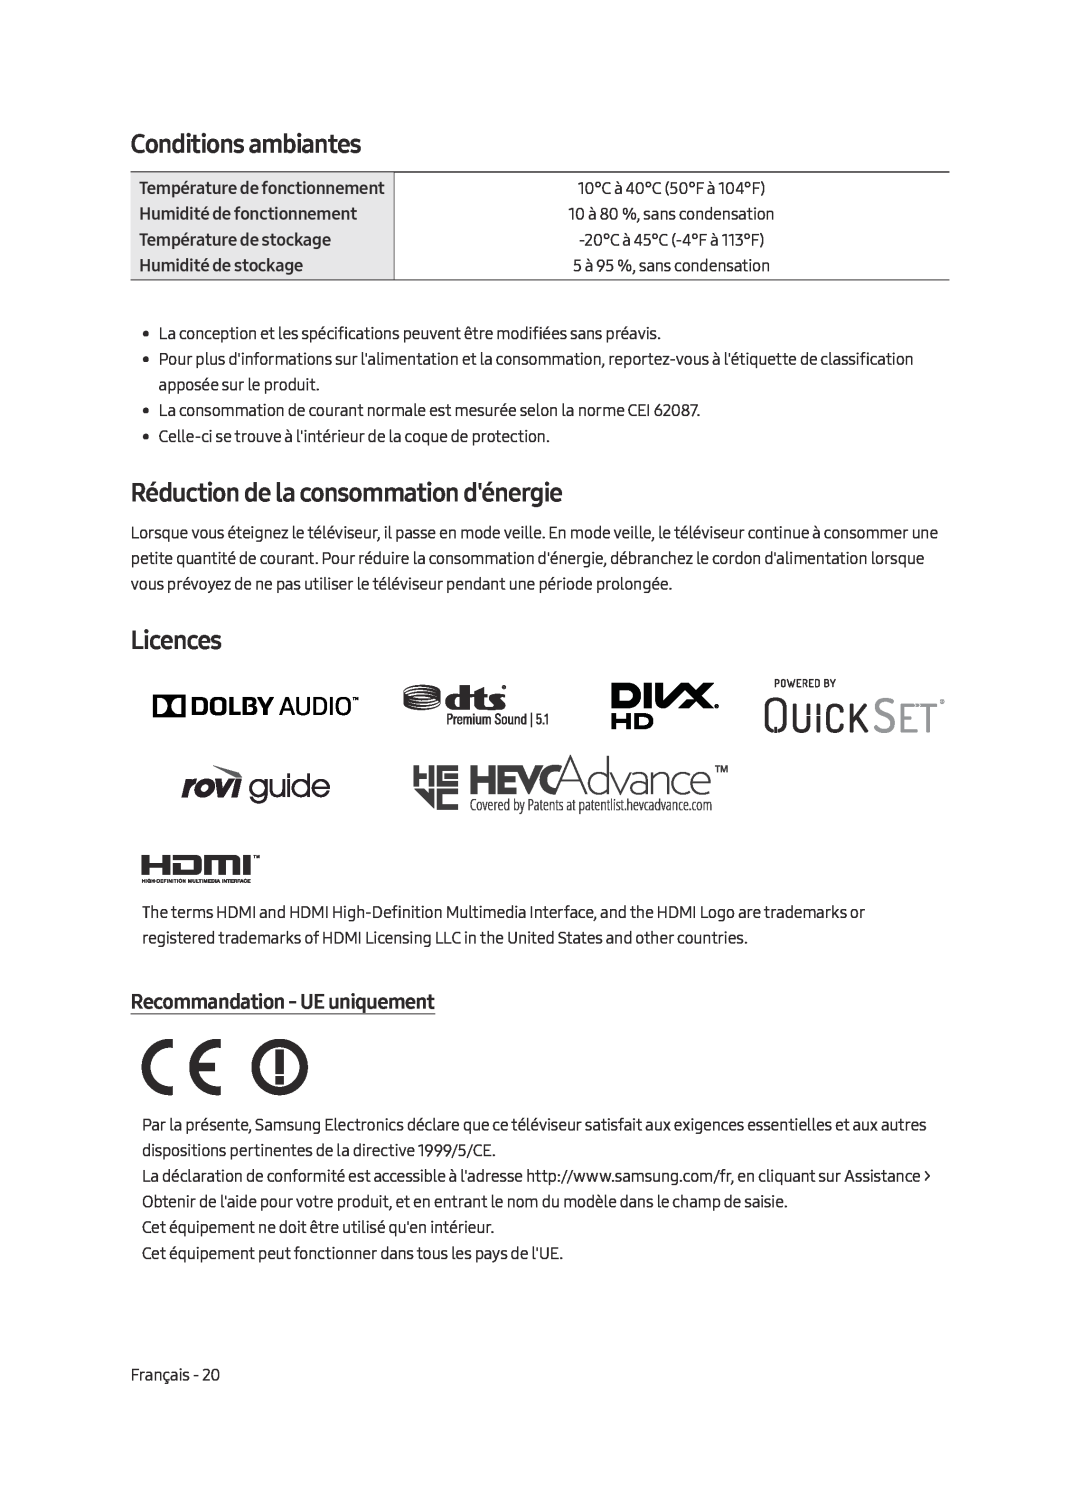 Samsung UE65MU7009TXZG manual Conditions ambiantes, Réduction de la consommation dénergie, Recommandation - UE uniquement 